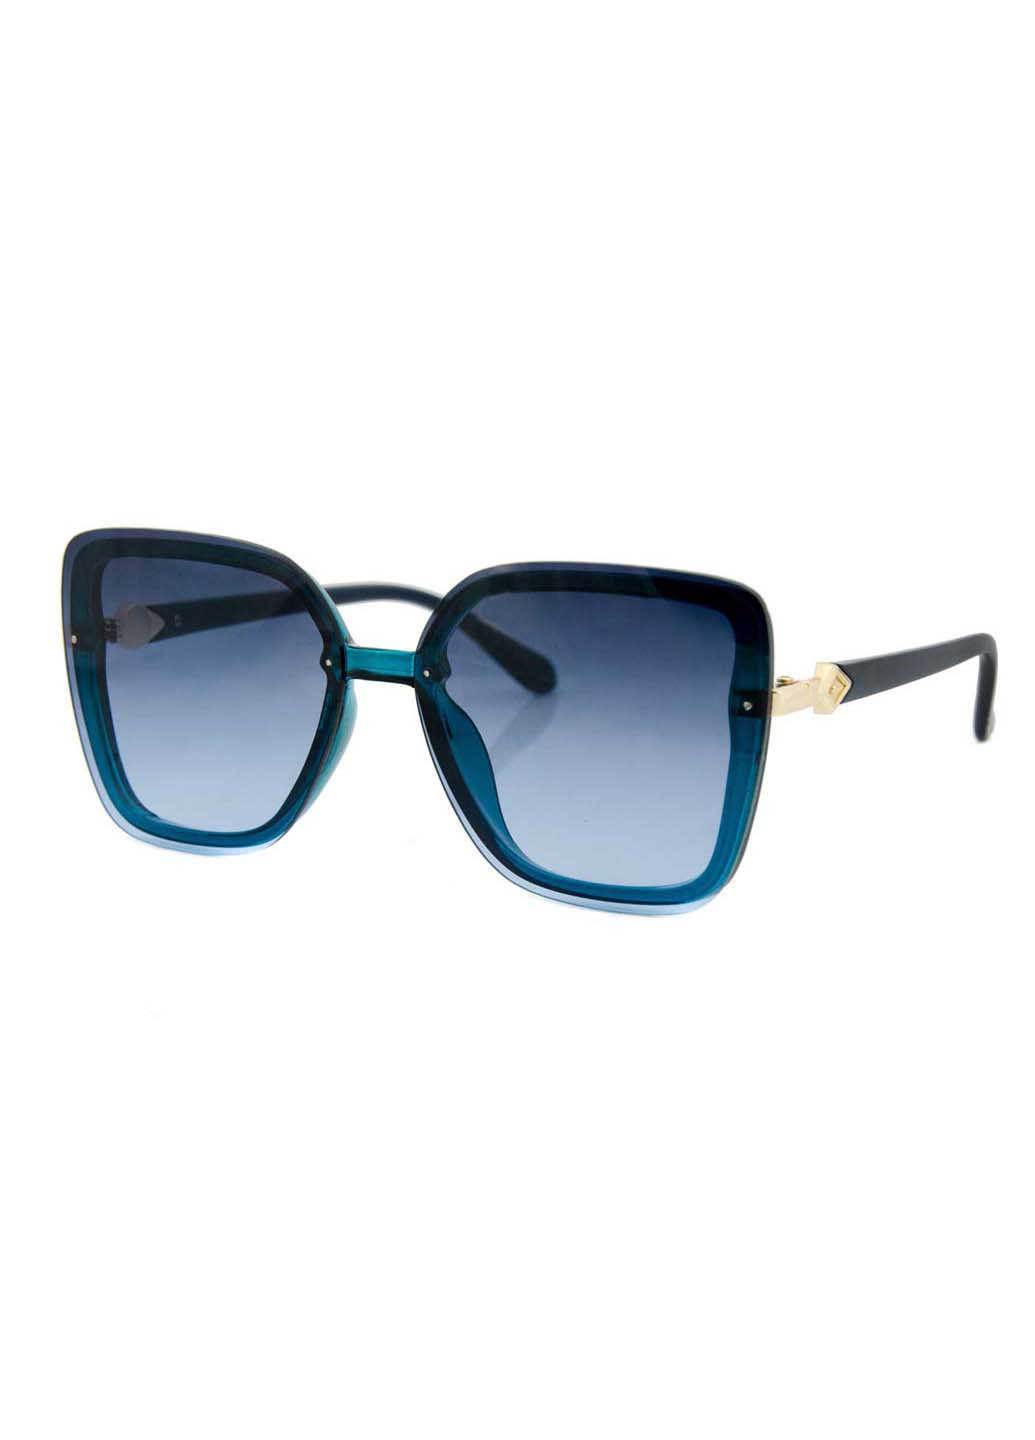 Солнцезащитные очки One size Sumwin синие